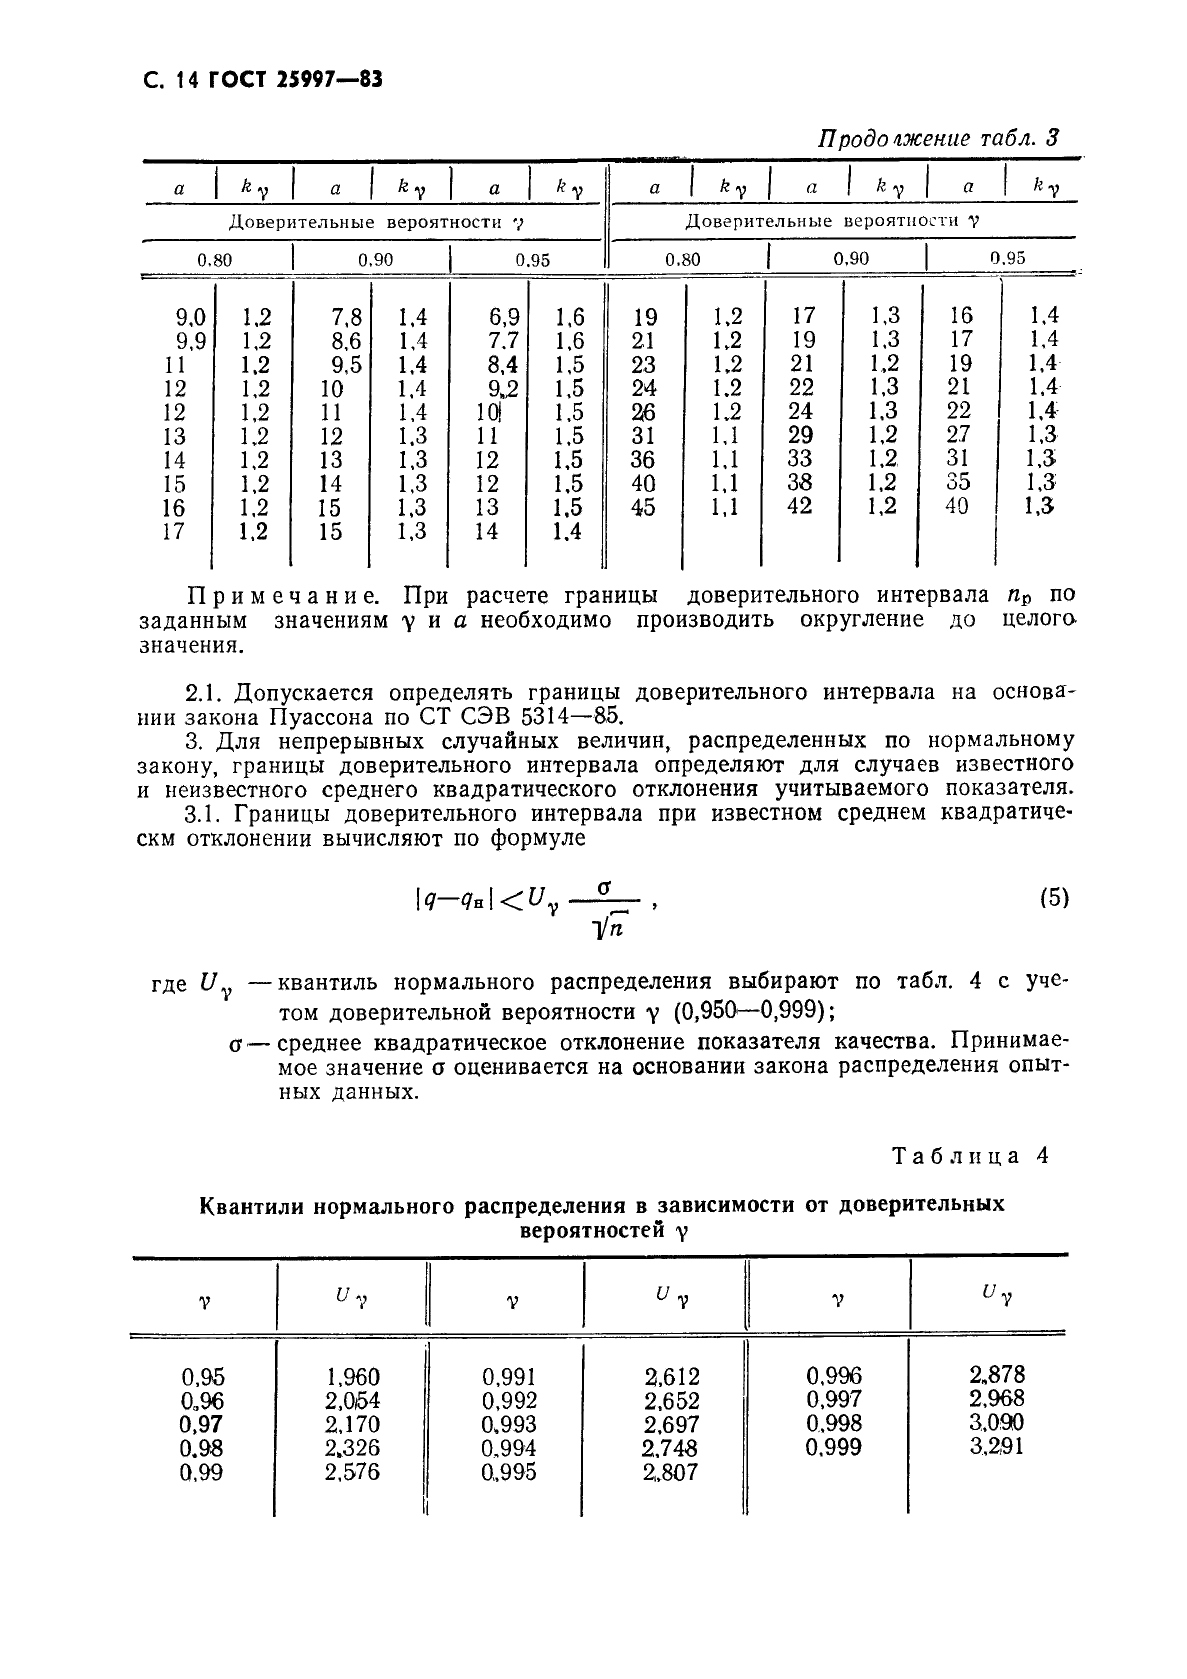 ГОСТ 25997-83 Сварка металлов плавлением. Статистическая оценка качества по результатам неразрушающего контроля (фото 15 из 18)